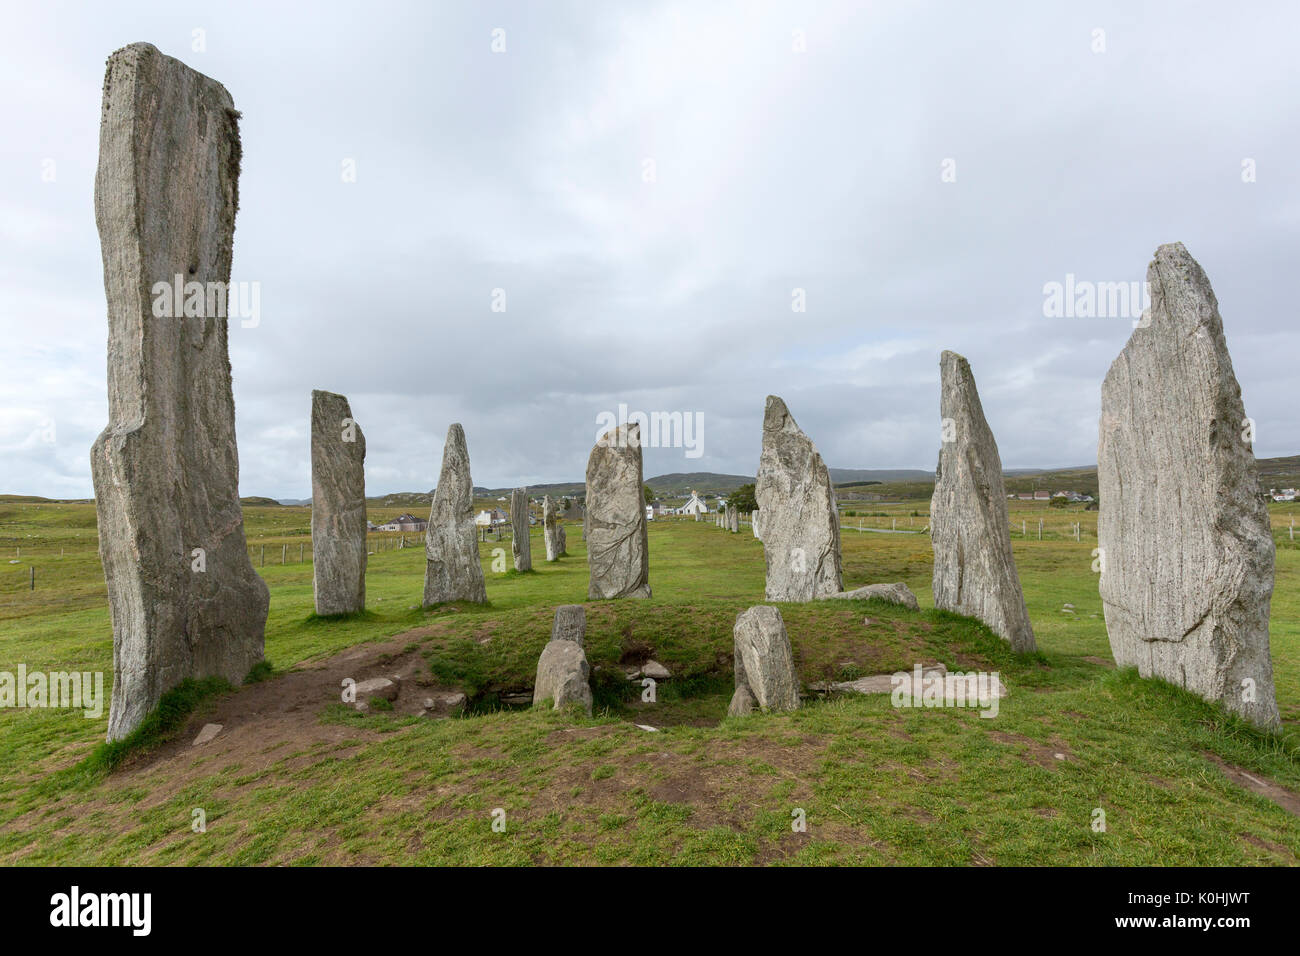 Chambré tombe, Callanish Standing Stones, pierres placées dans un motif cruciforme avec un cercle central en pierre, Callanish, Ecosse, Royaume-Uni Banque D'Images